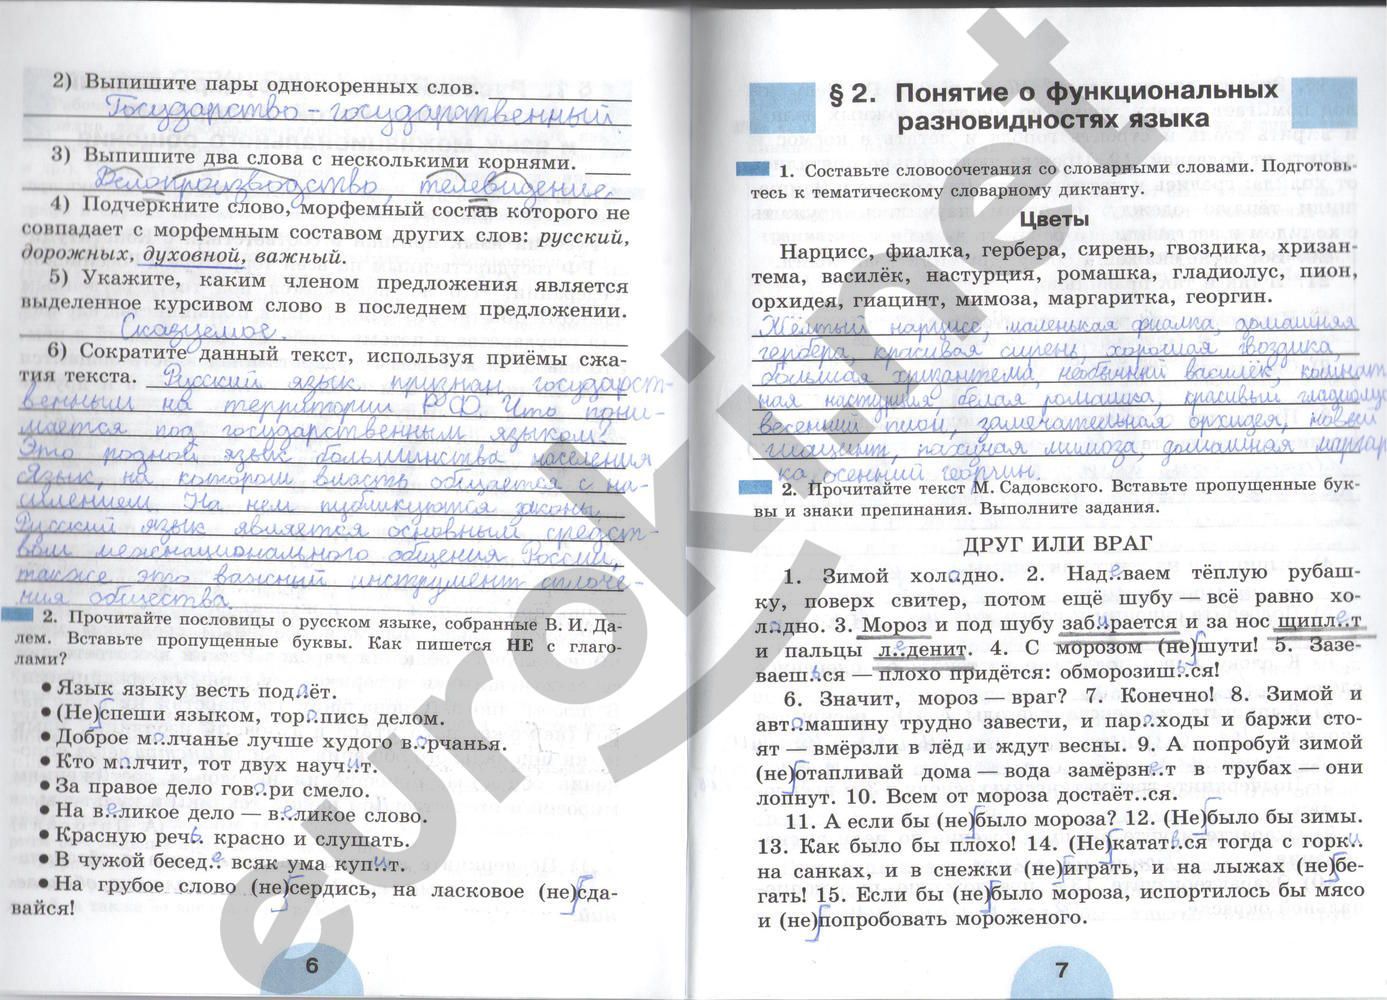 ГДЗ Русский язык 6 класс - стр. 6-7